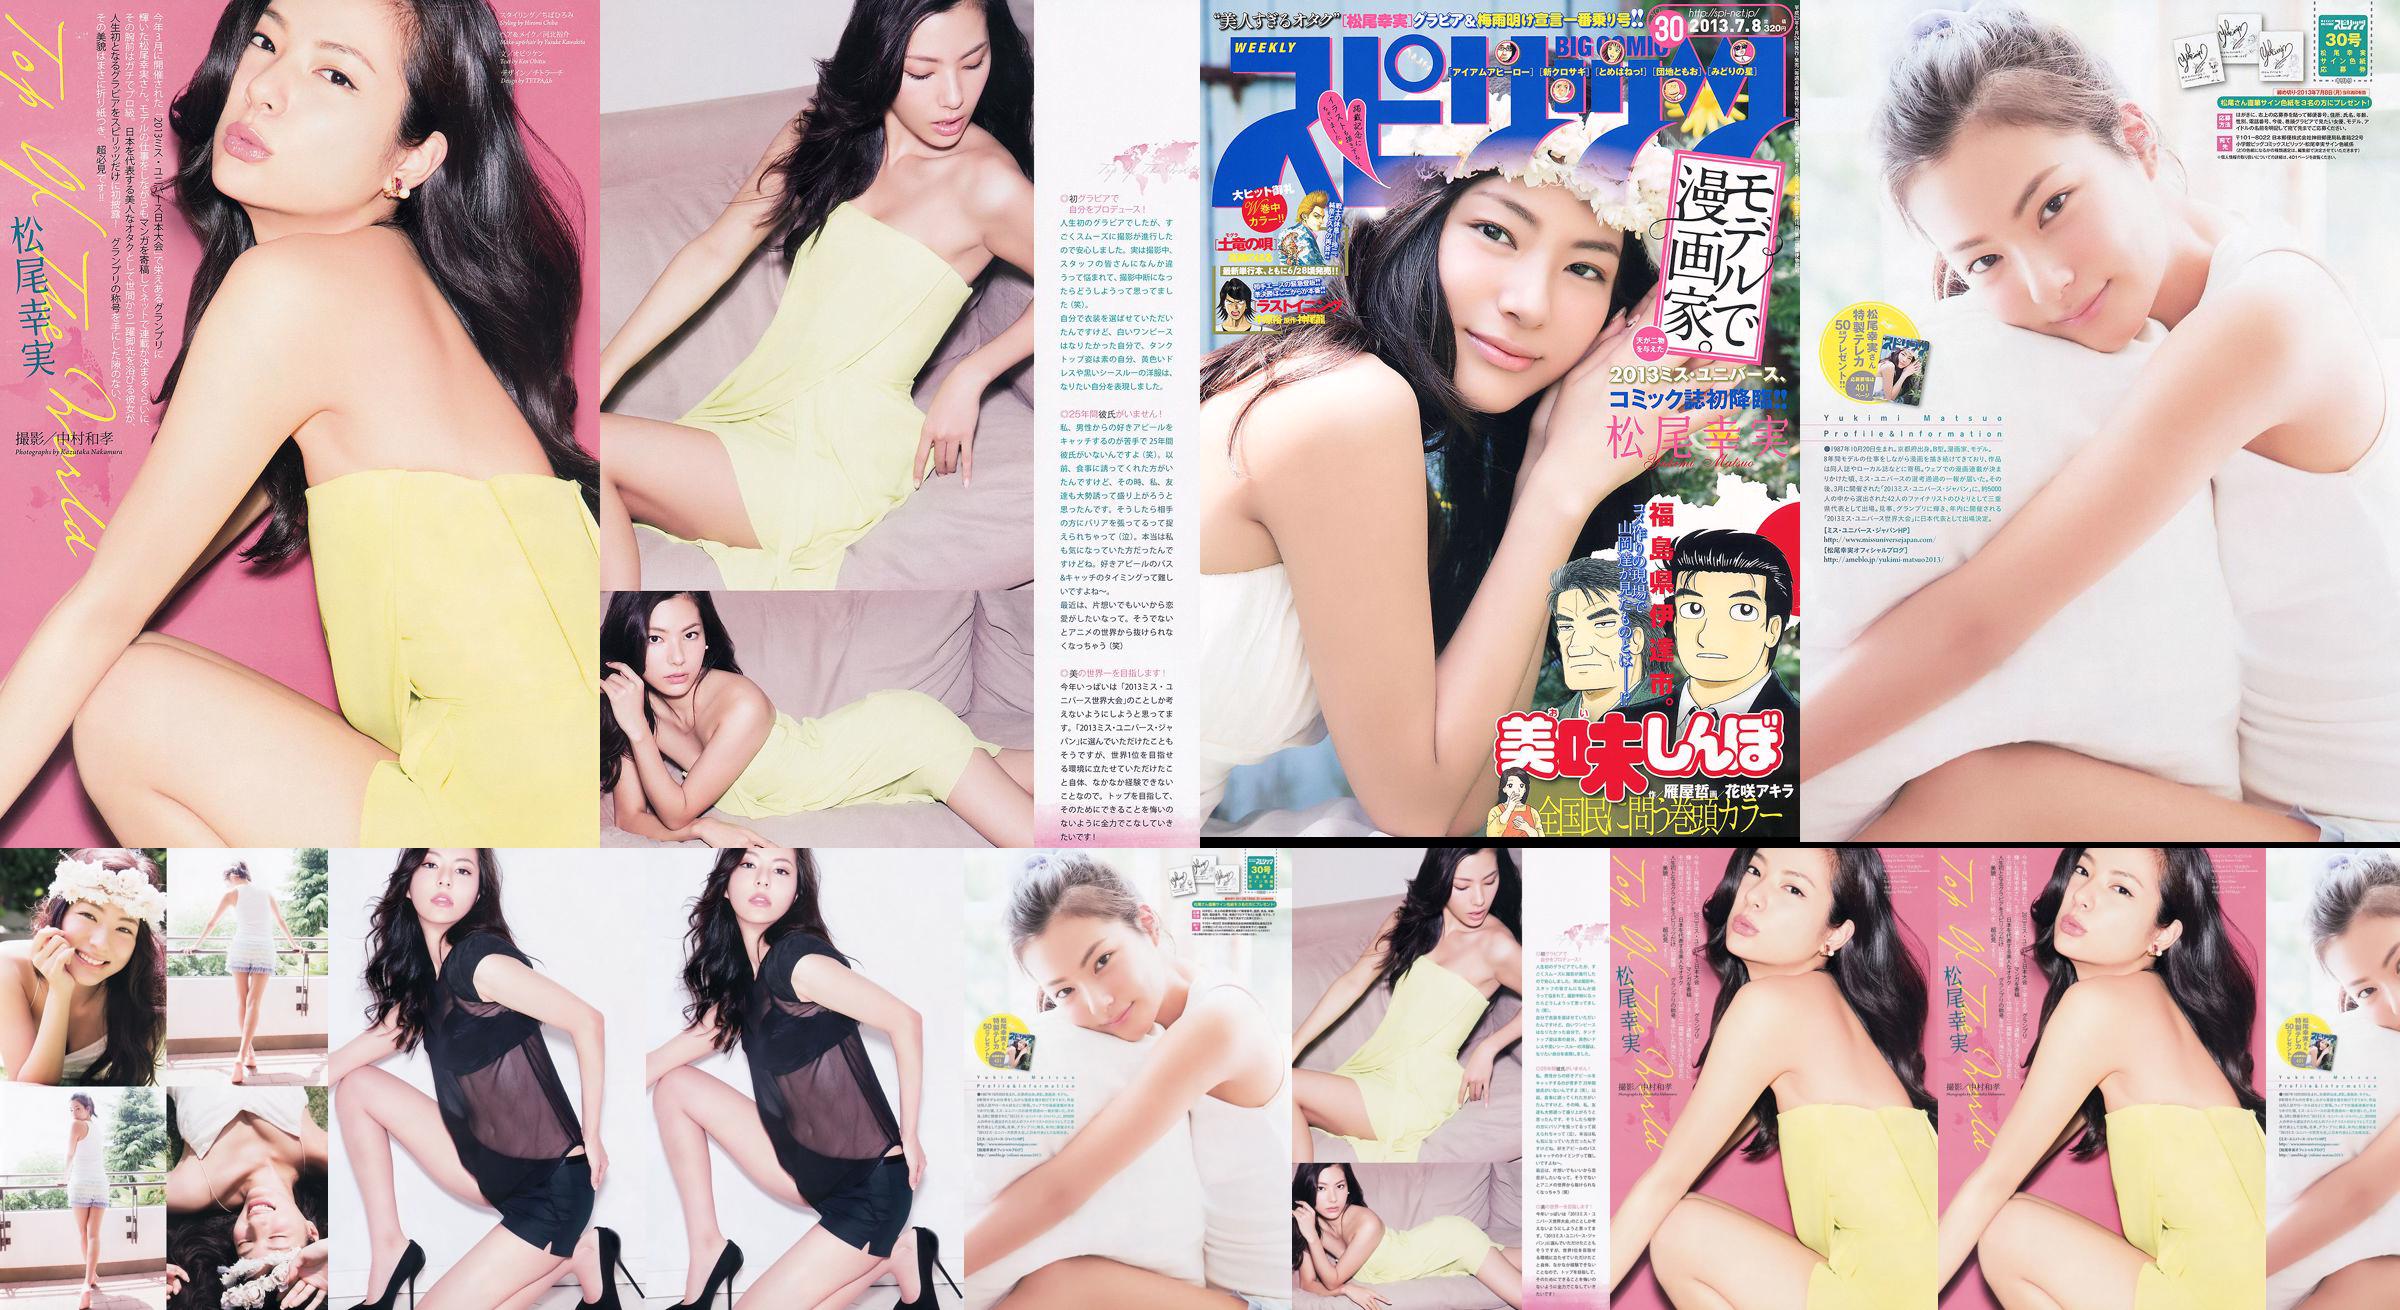 [Weekly Big Comic Spirits] Komi Matsuo 2013 No.30 Photo Magazine No.fed37e Trang 1